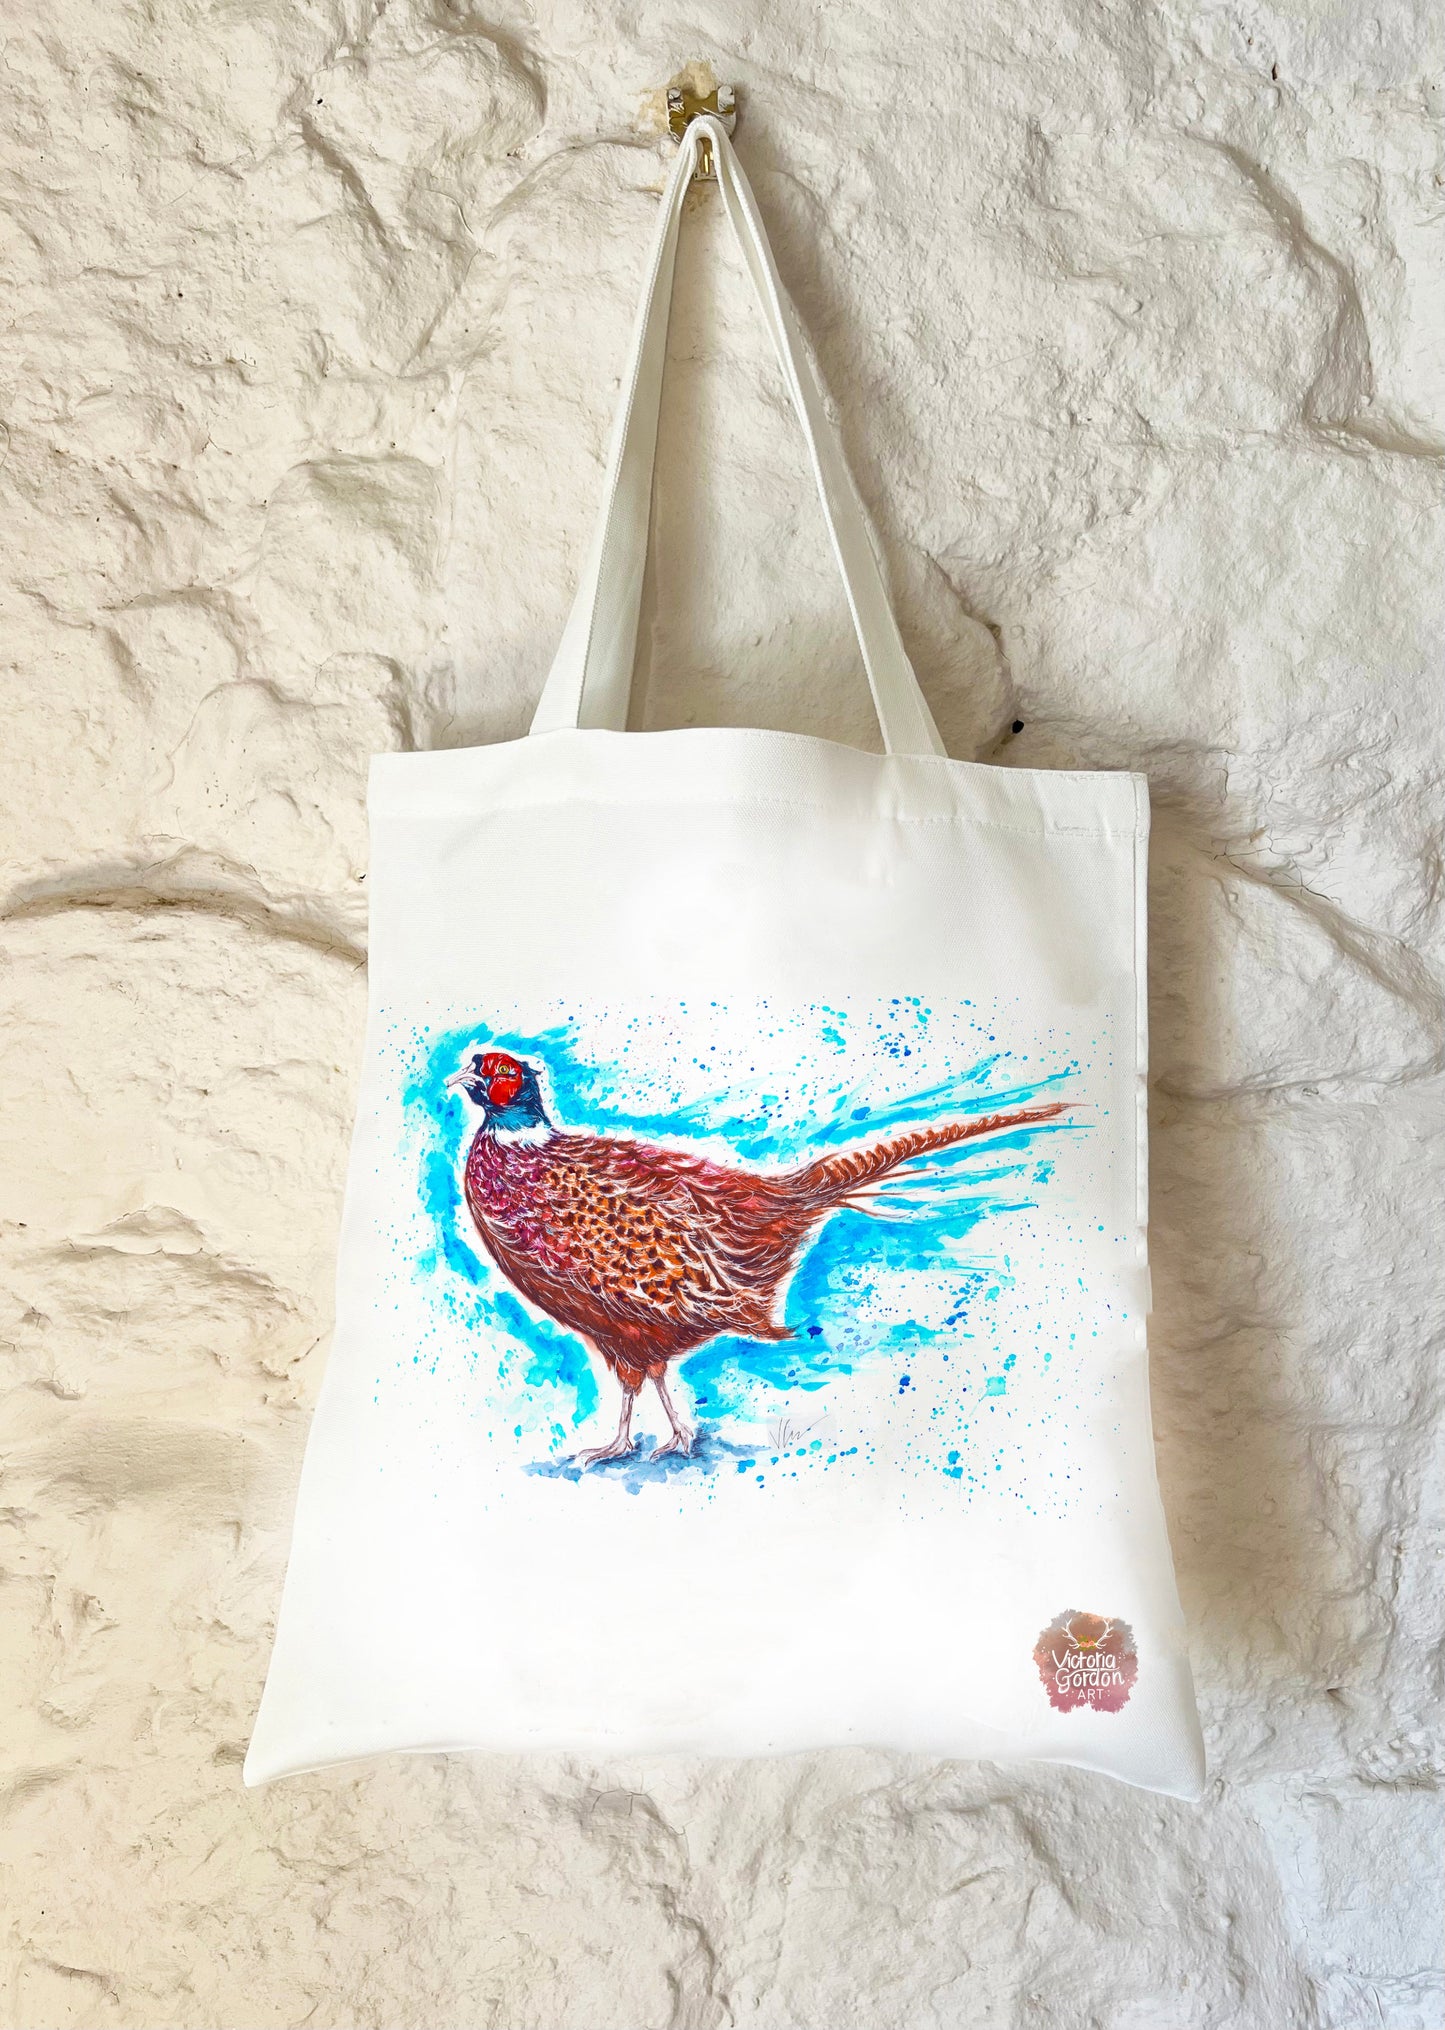 Patrick the Pheasant Tote Bag